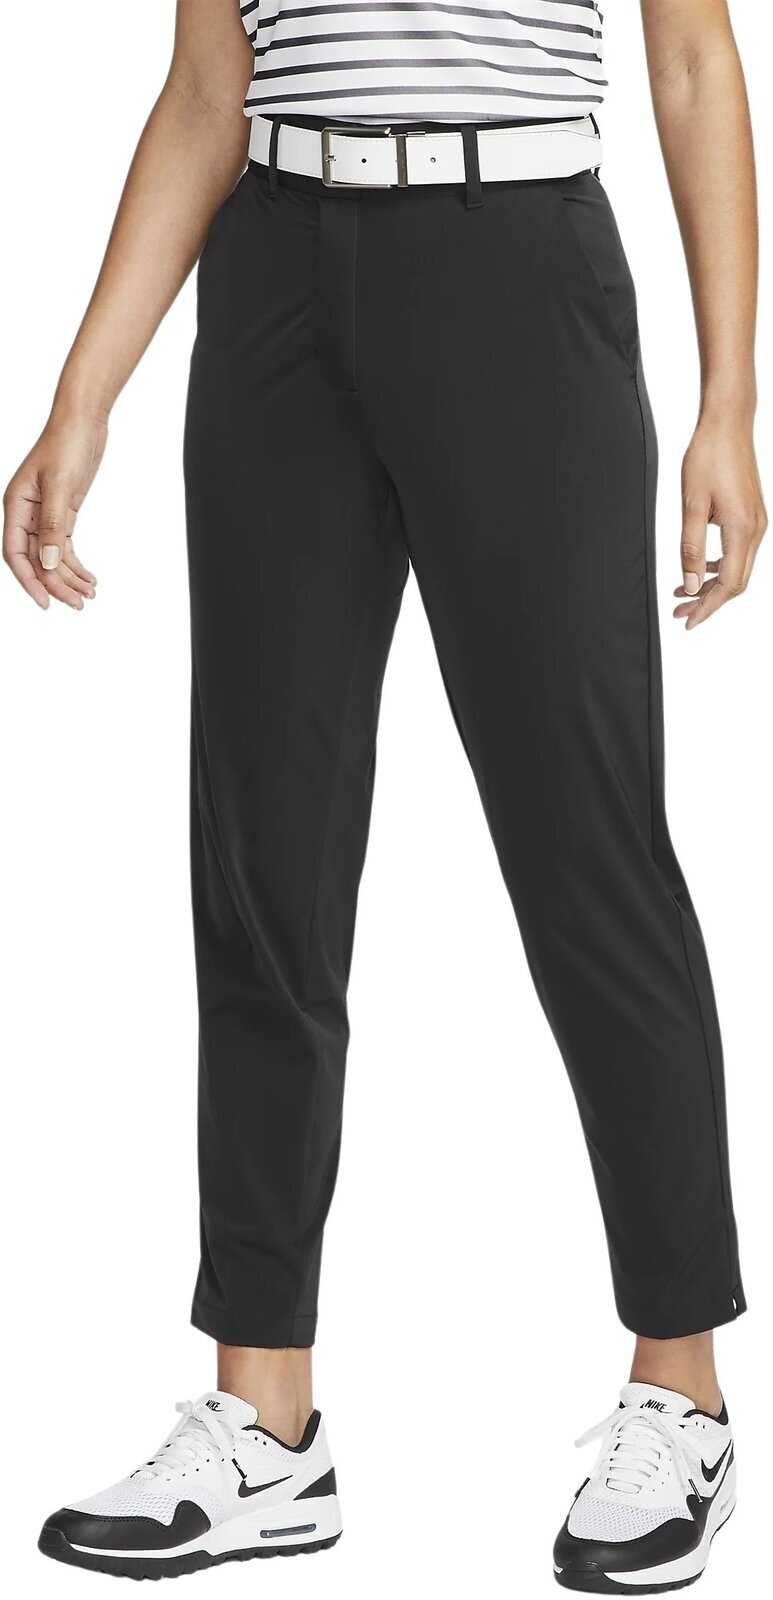 Pantaloni Nike Dri-Fit Tour Womens Pants Black/White L